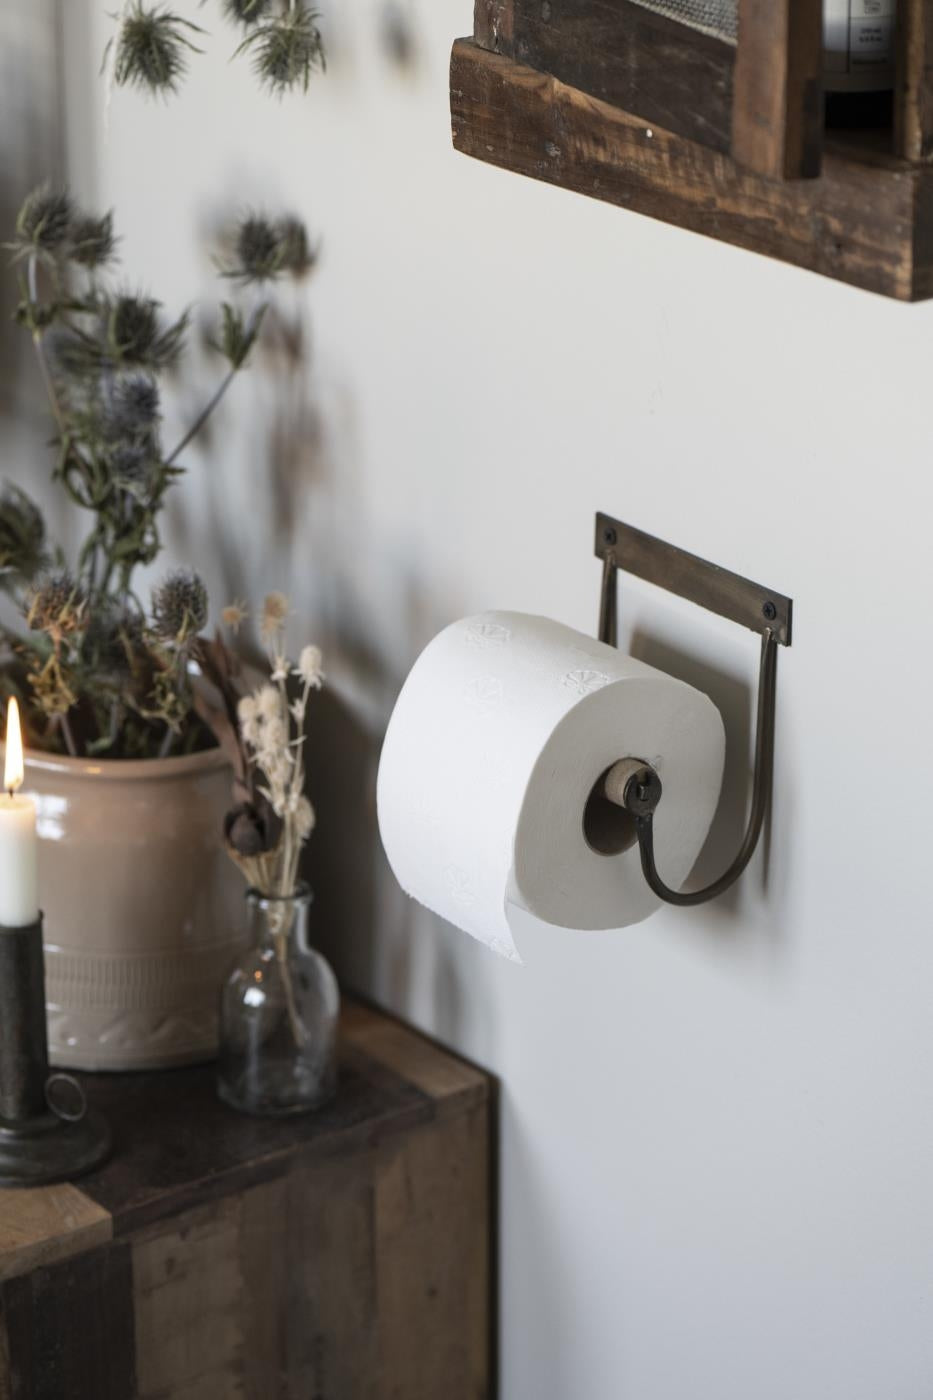 Sort toiletpapirsholder med trærulle